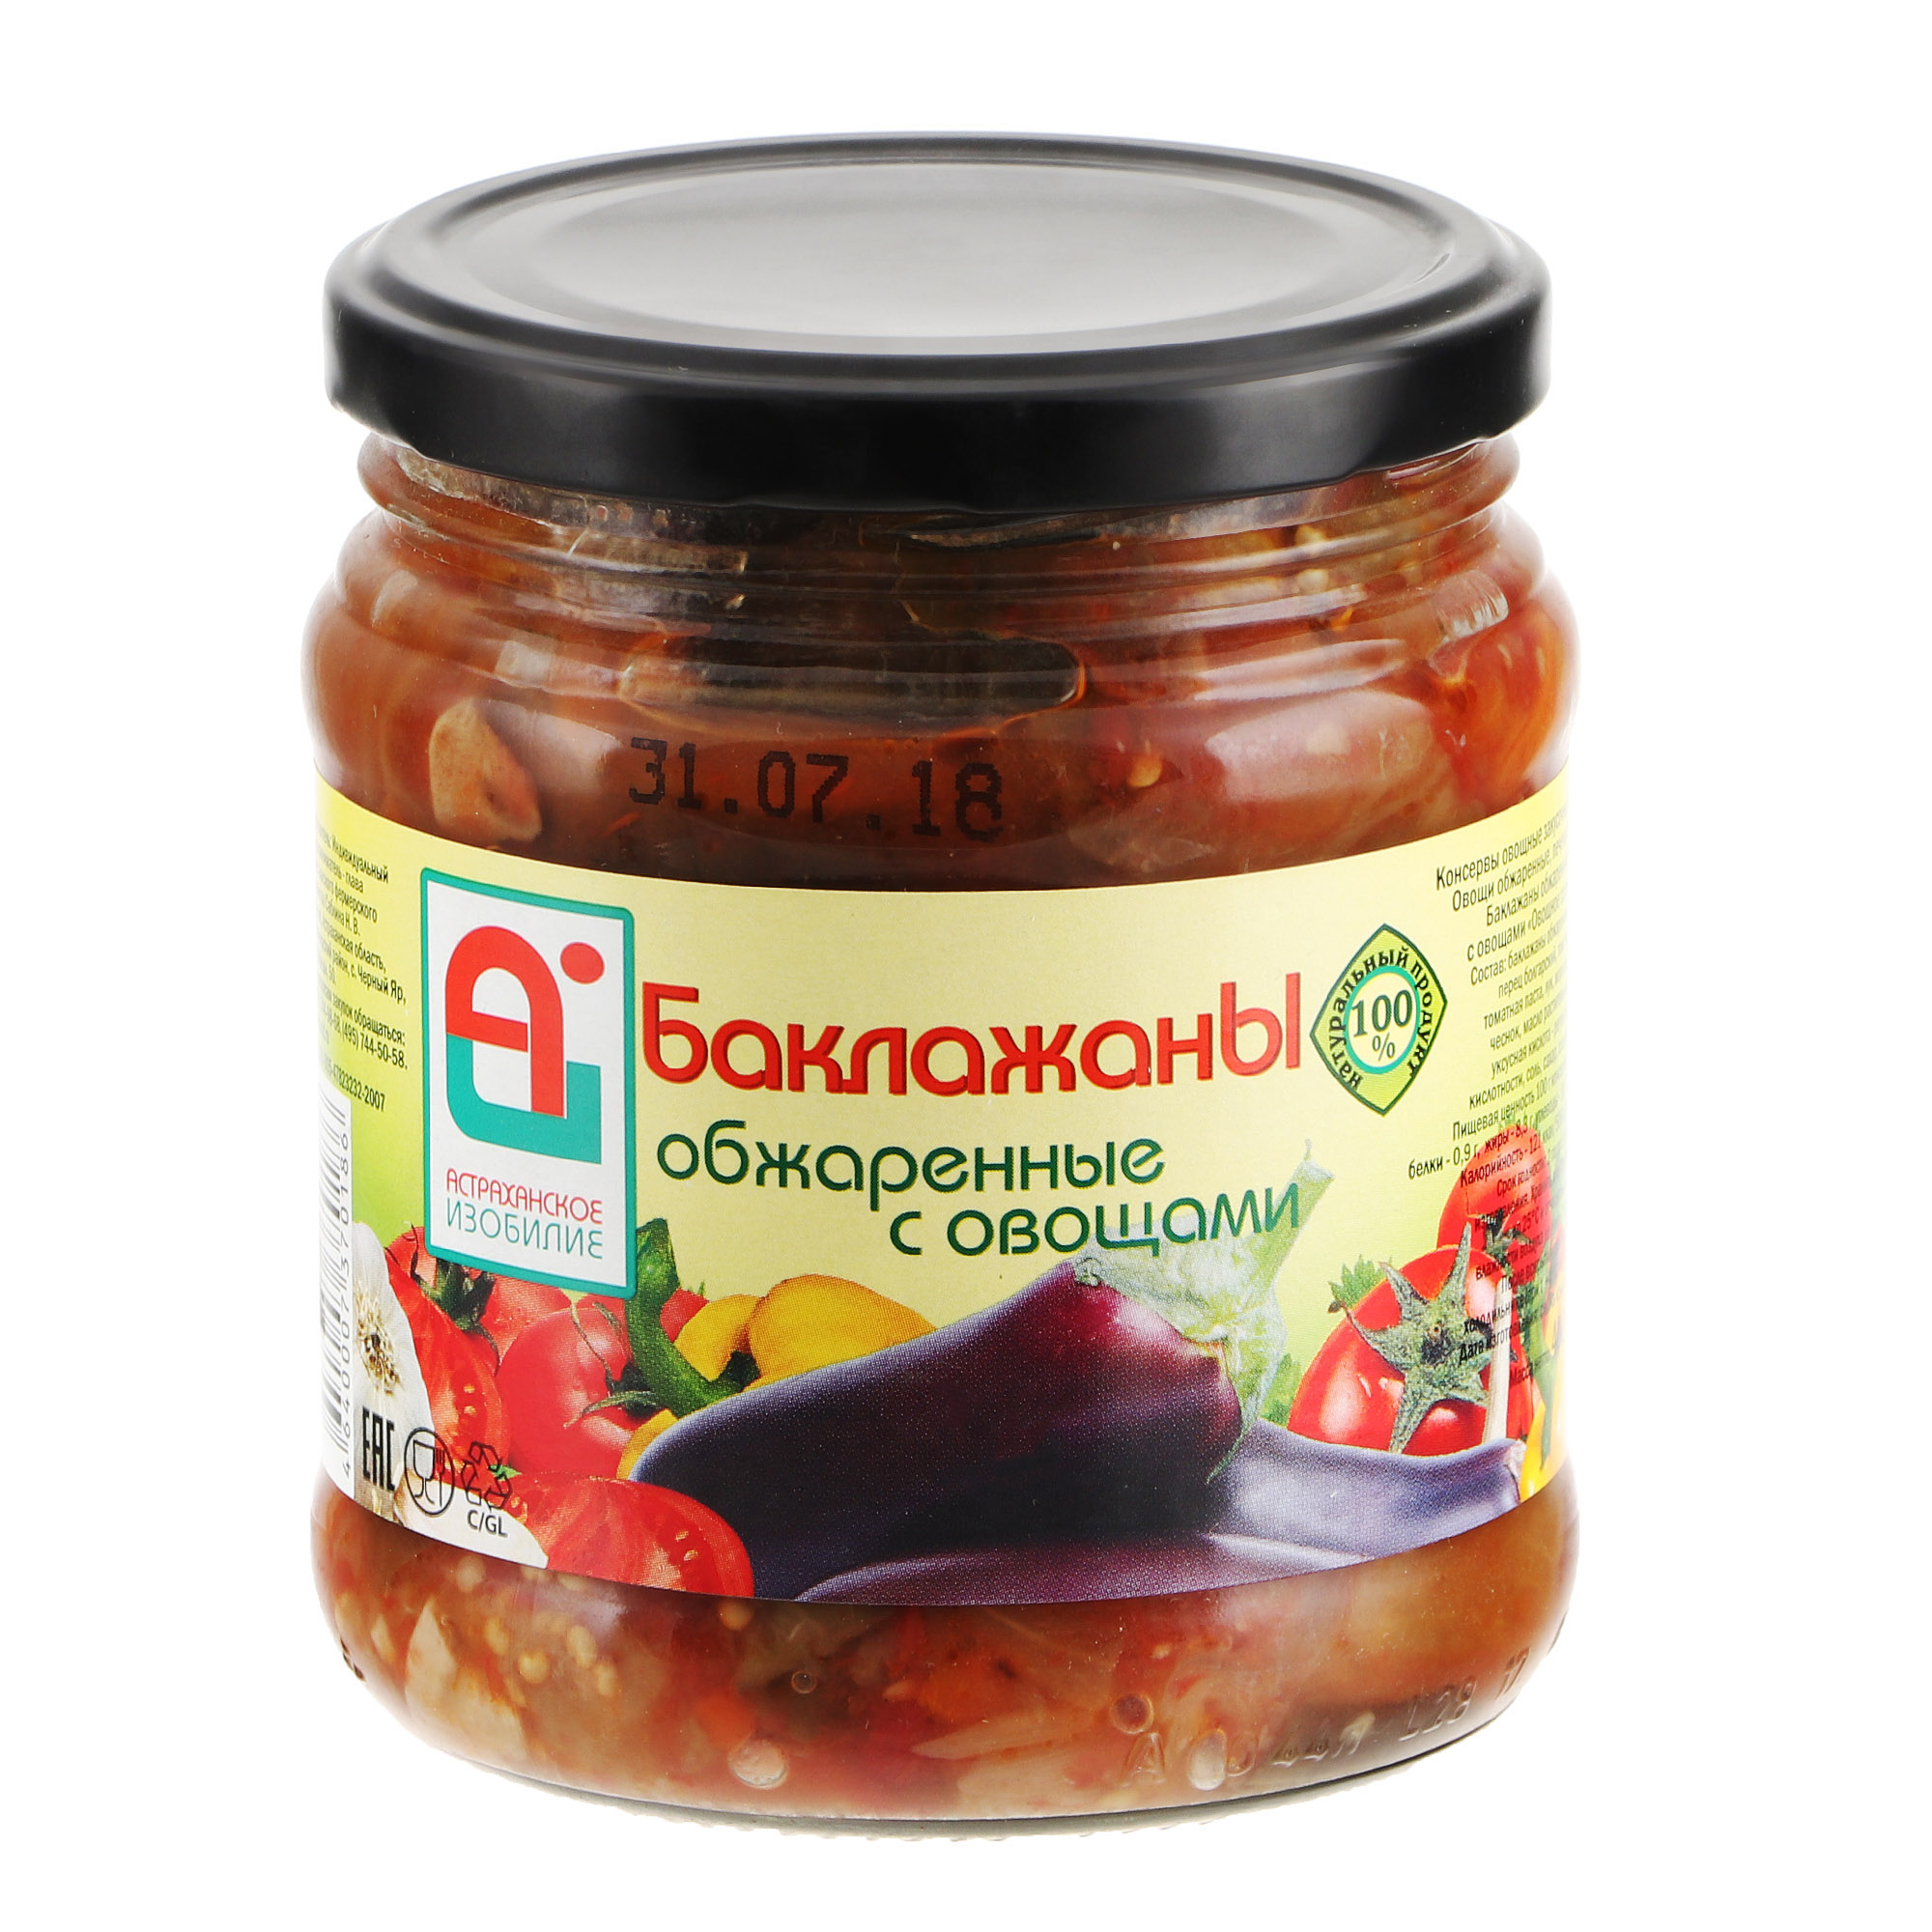 Баклажаны обжаренные Астраханское Изобилие с овощами 500 г баклажаны астраханское изобилие по болгарски 500 г